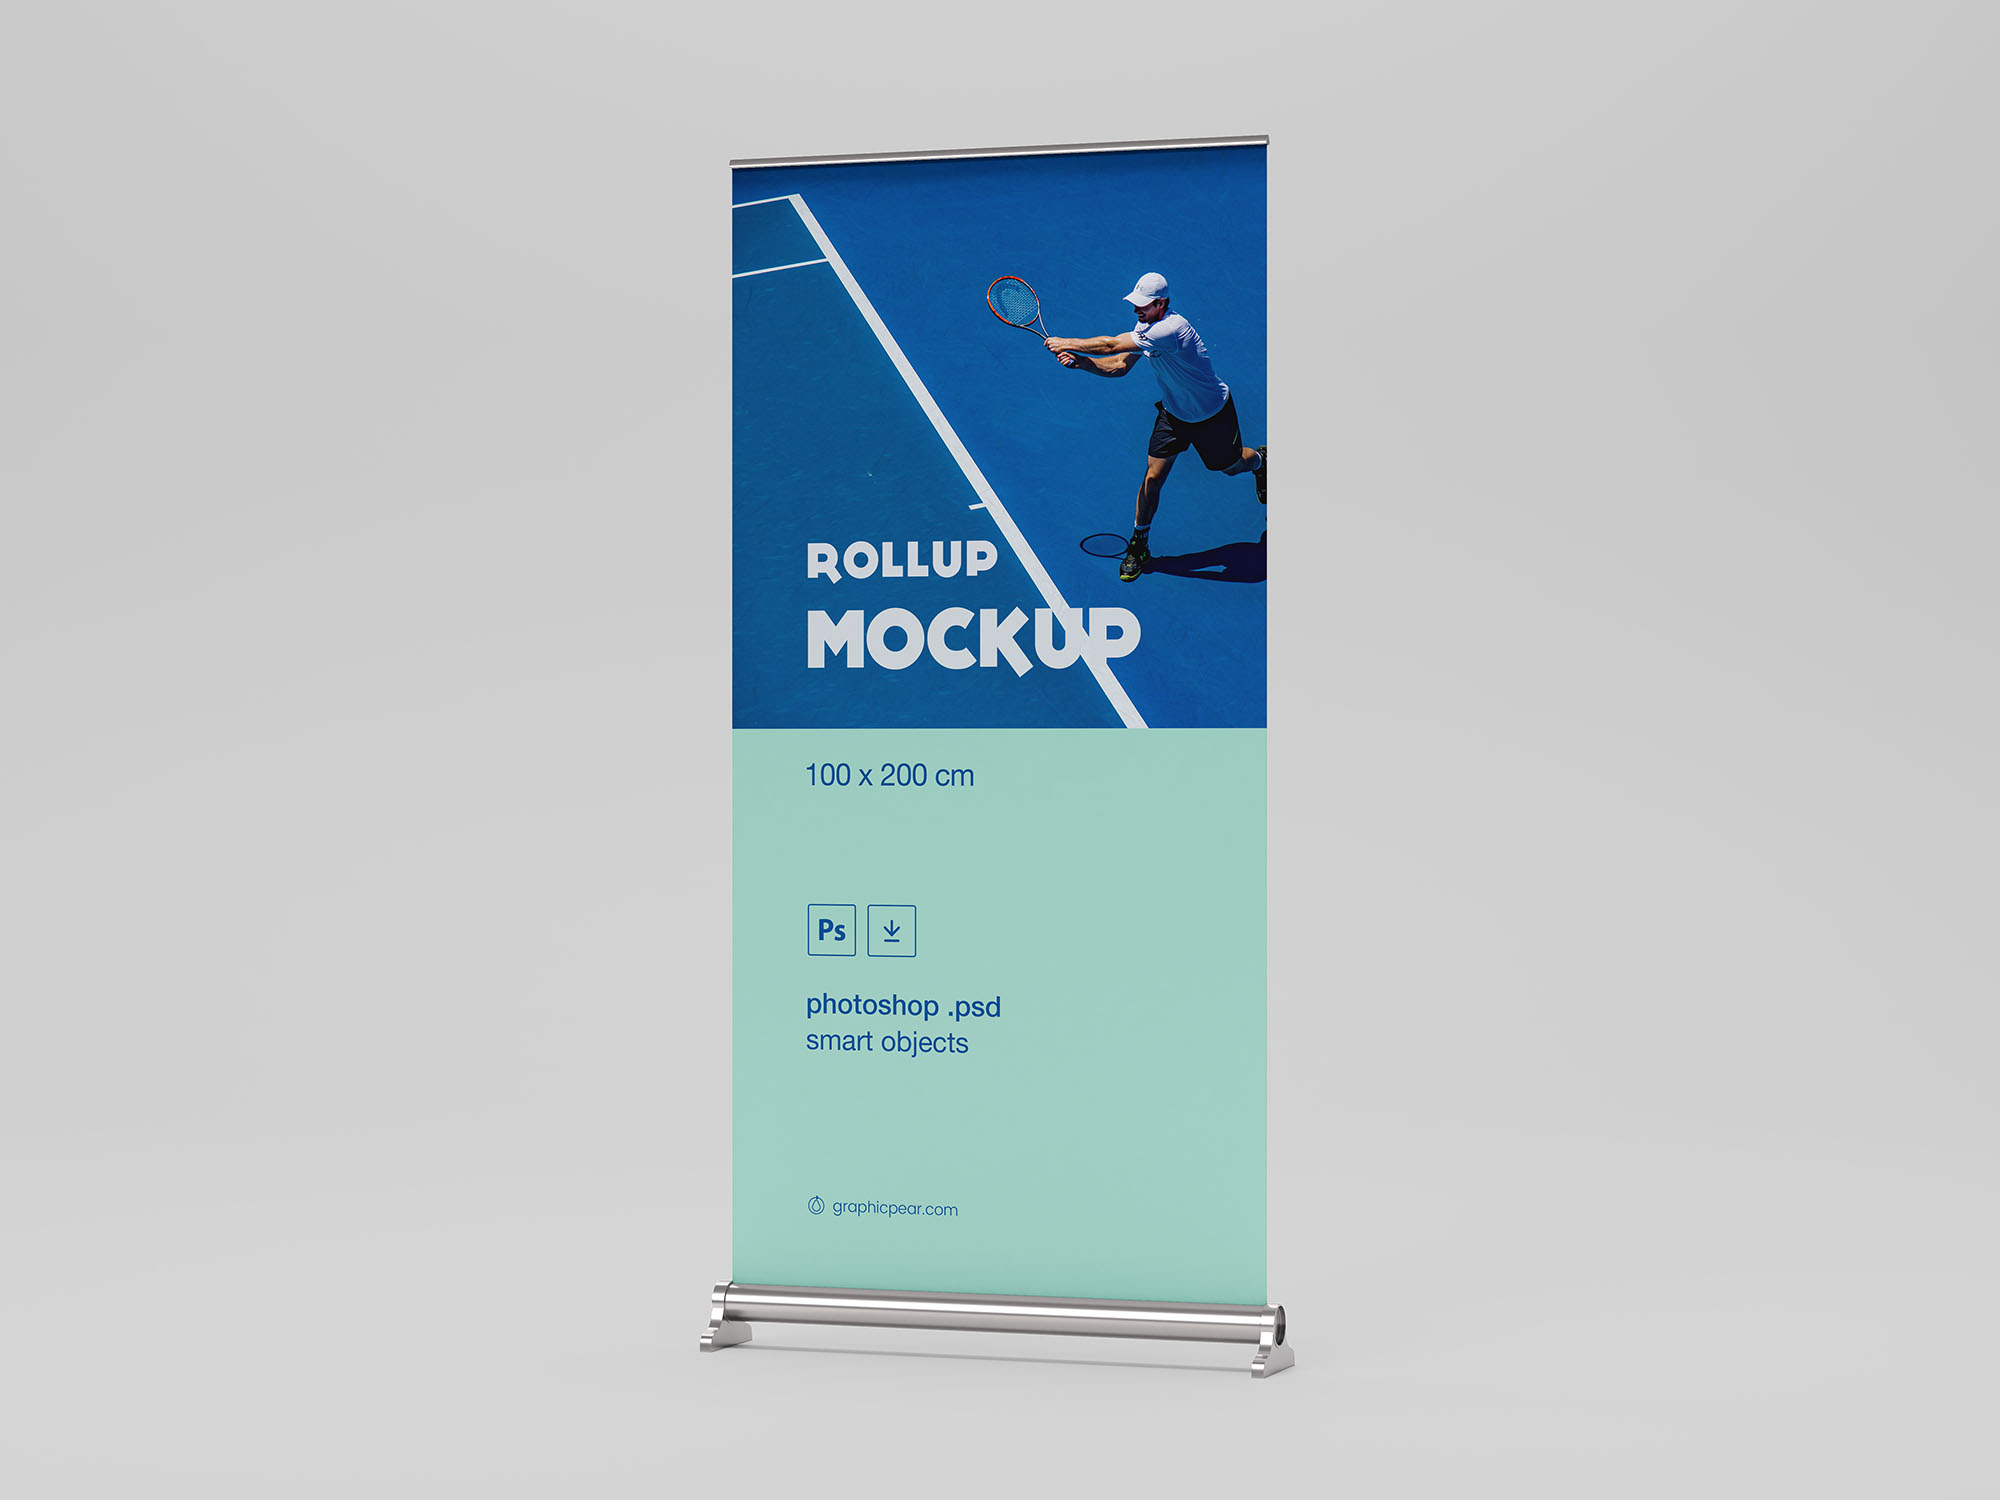 企业/品牌/店铺宣传X展架易拉宝广告设计效果图样机模板 Rollup Mockup 100 x 200cm插图